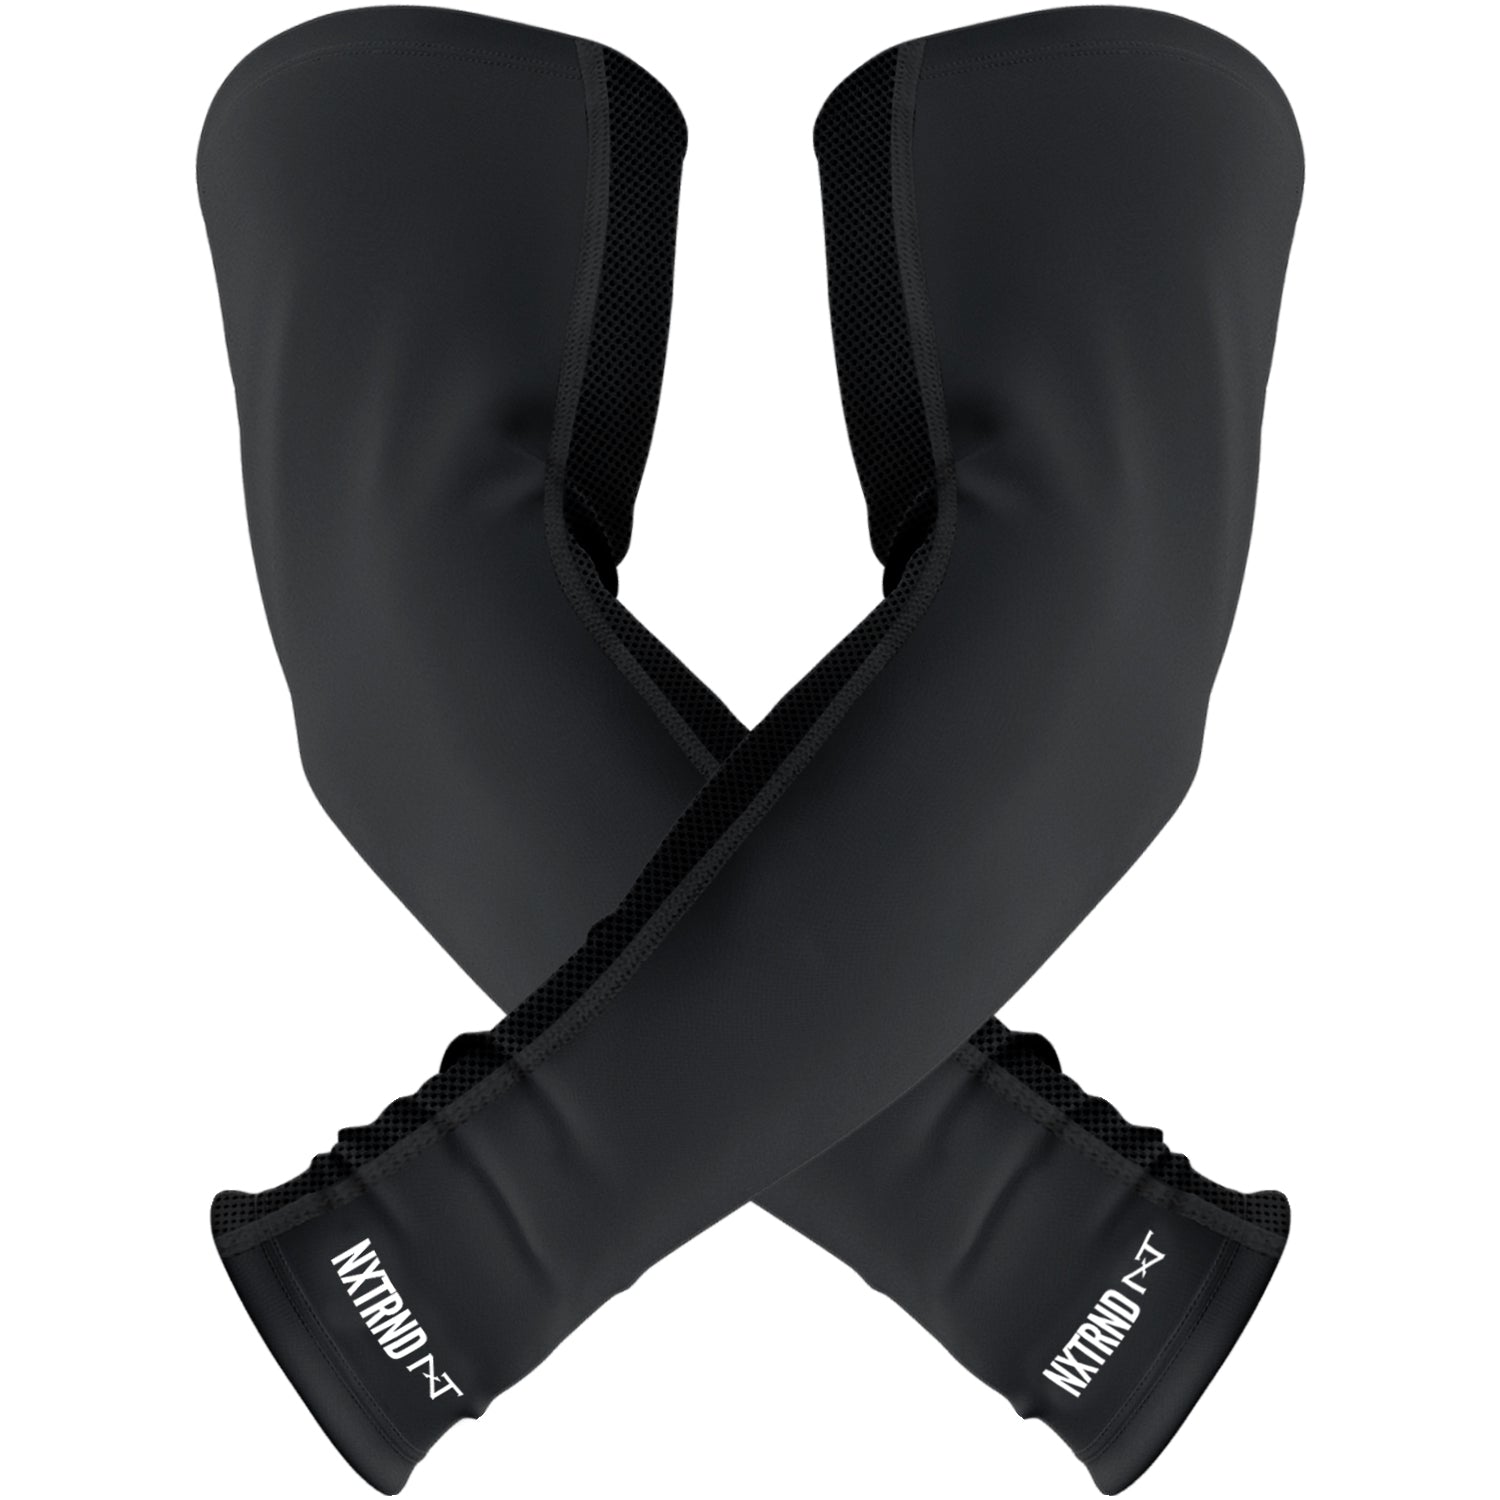 NXTRND AirTek Arm Sleeves Black (1 Pair)